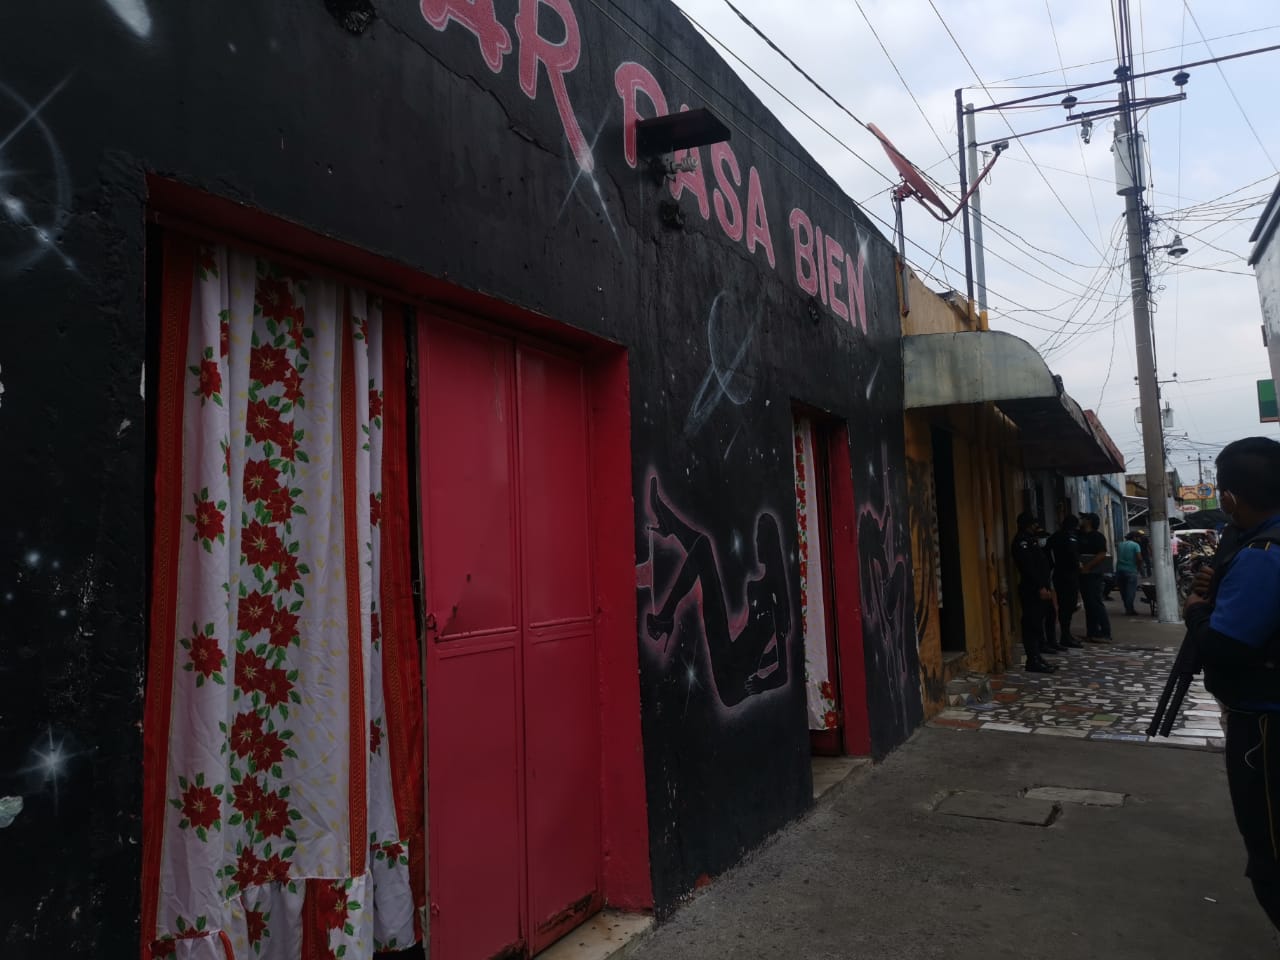 Los operativos en contra de la trata de personas se desarrollaron en centros nocturnos de Patulul, Suchitepéquez. (Foto Prensa Libre: MP)